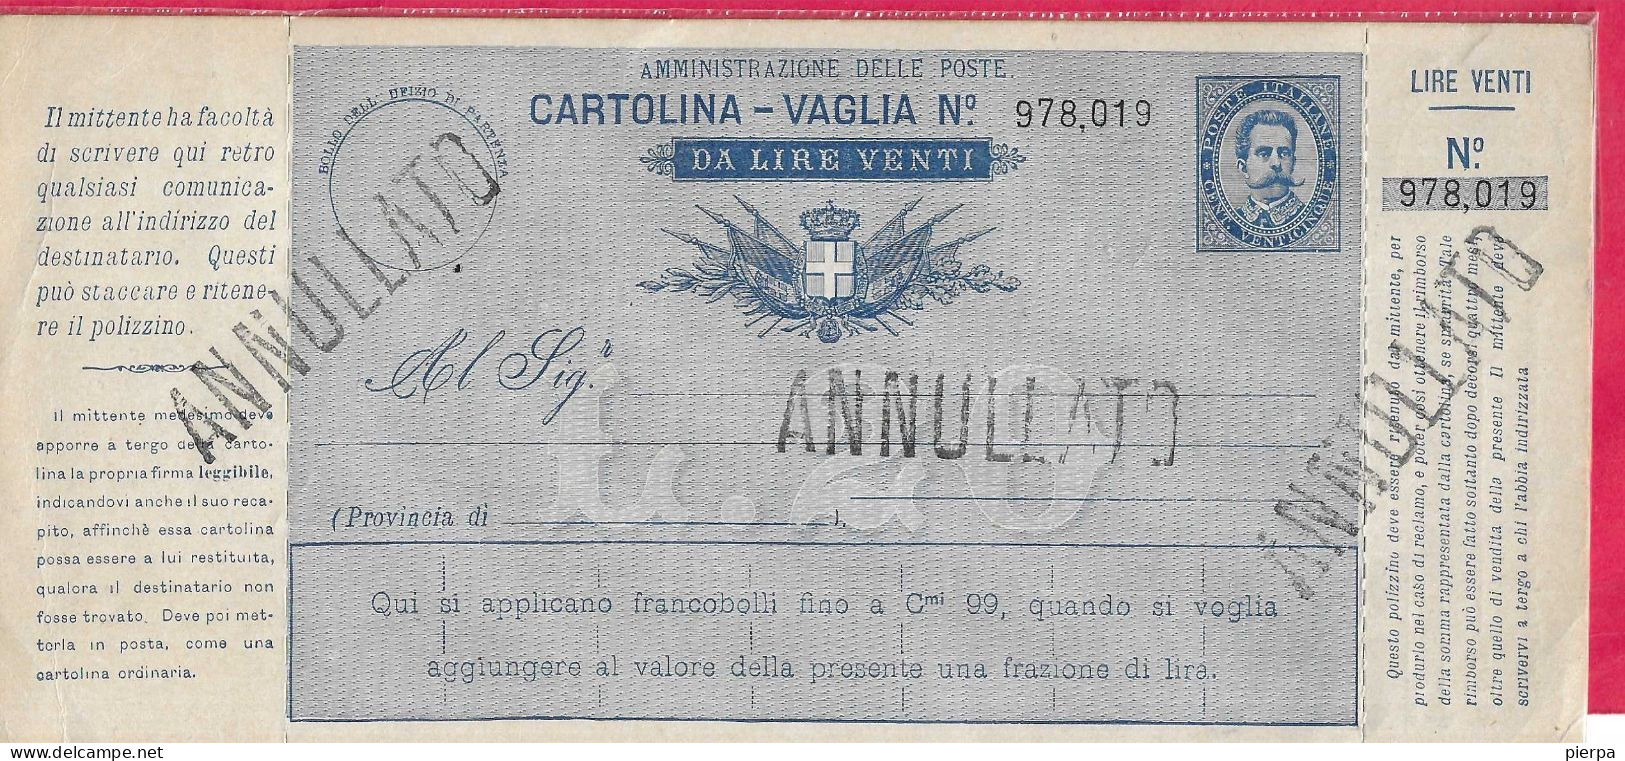 INTERO CARTOLINA-VAGLIA UMBERTO C.25 DA LIRE 20 (CAT. INT. 9A)  NUOVA - TIMBRO ANNULLATO - Interi Postali